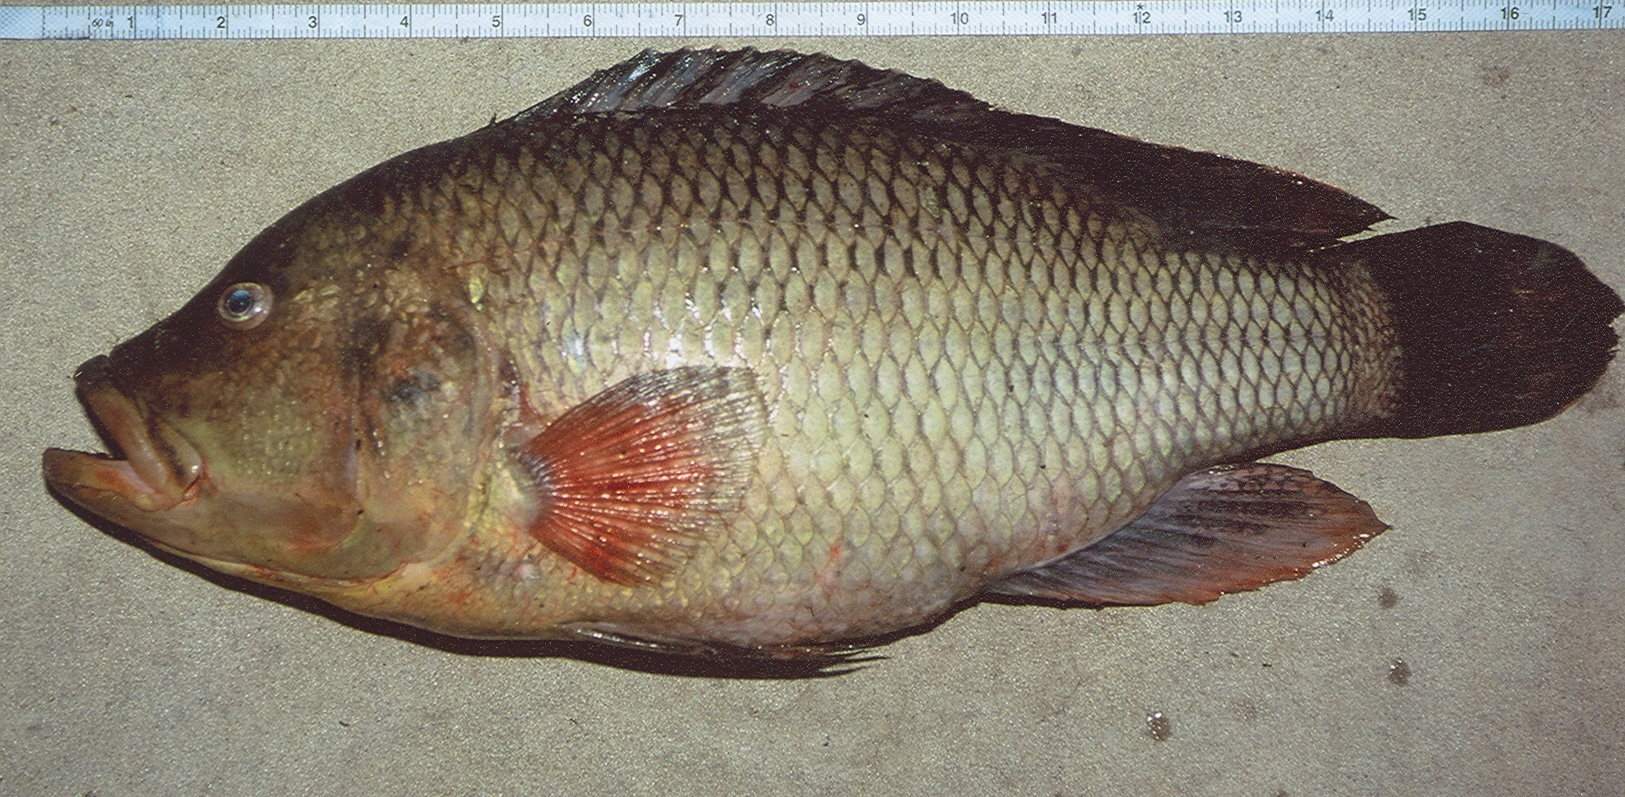 (Serranochromis robustus robustus)